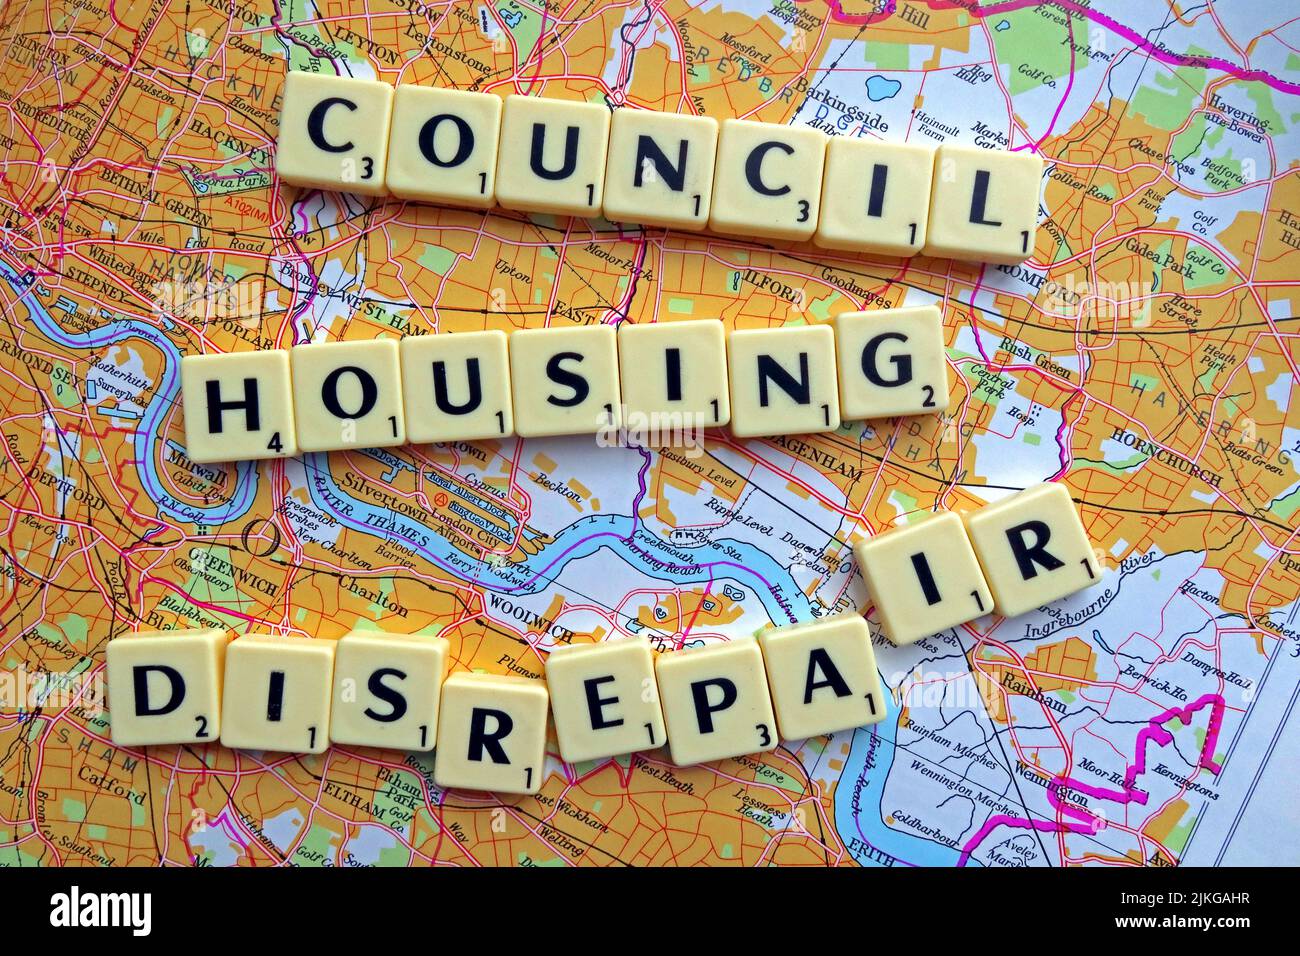 SocialHousing / Council Housing les problèmes de réparation avec des réparations réactives orthographiées dans les lettres Scrabble sur une carte des quartiers de Londres Banque D'Images